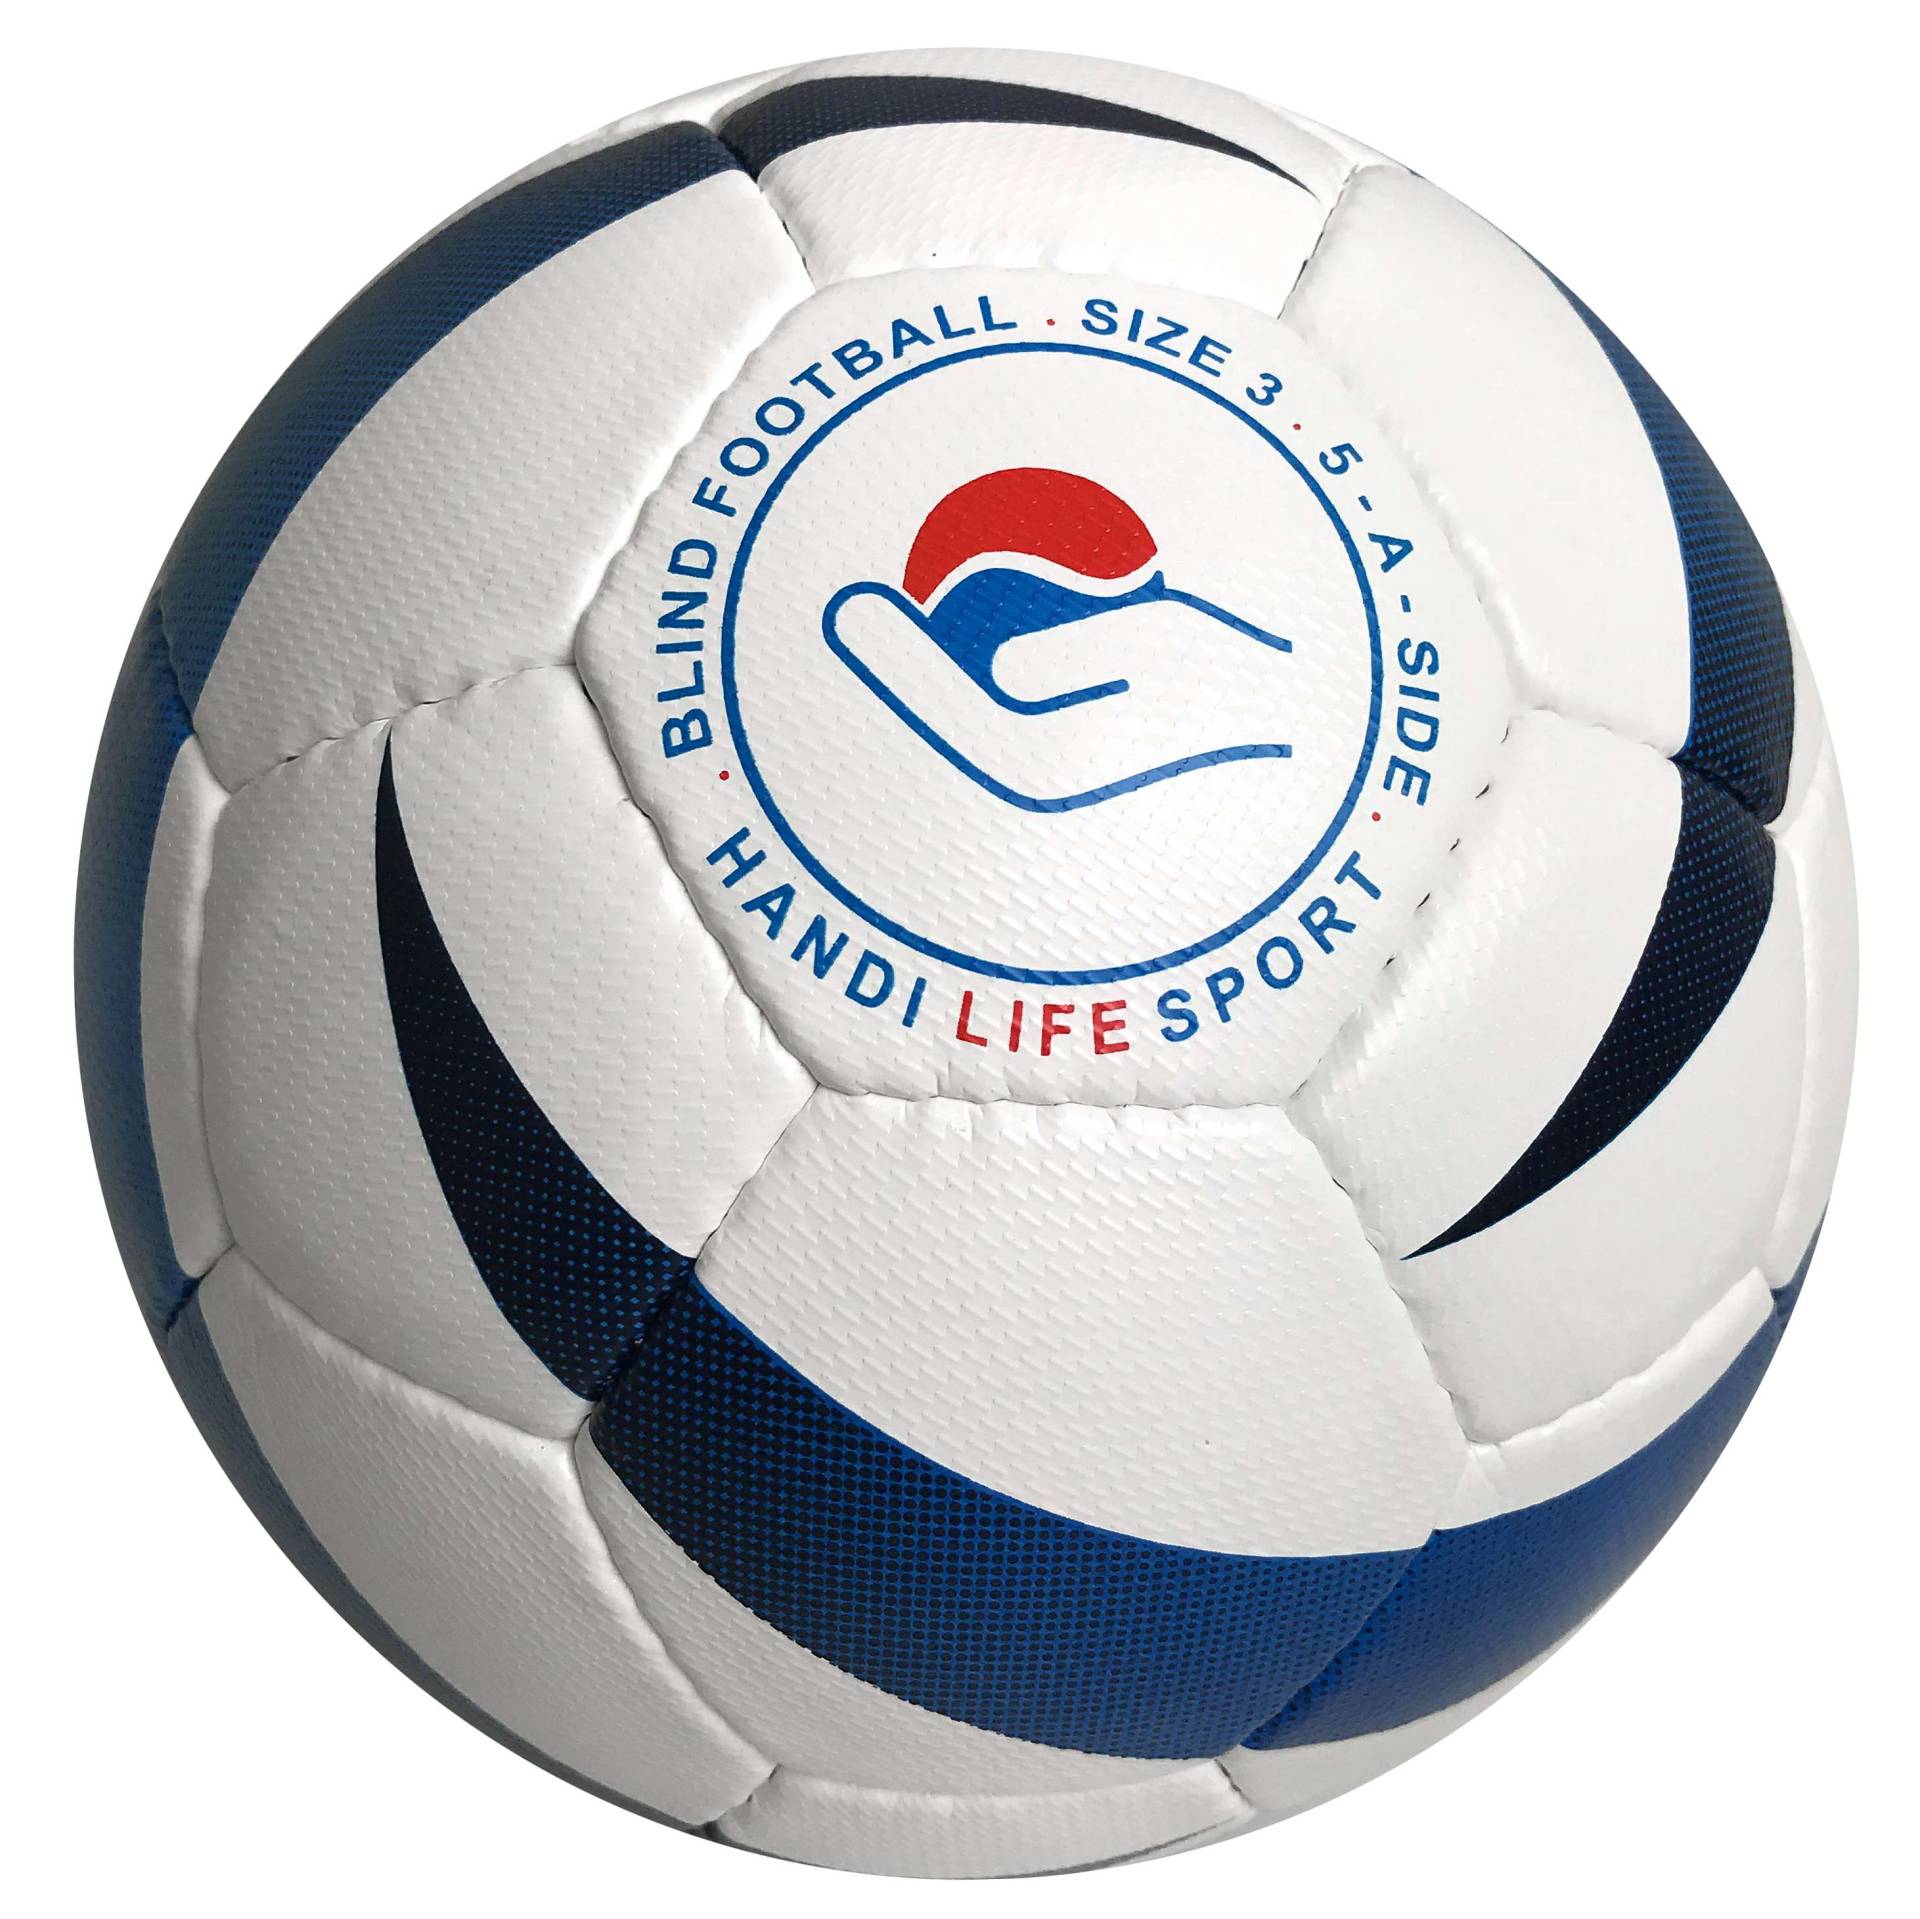 Handi Life Sport Blindenfußball "Blue Flame" von Handi Life Sport